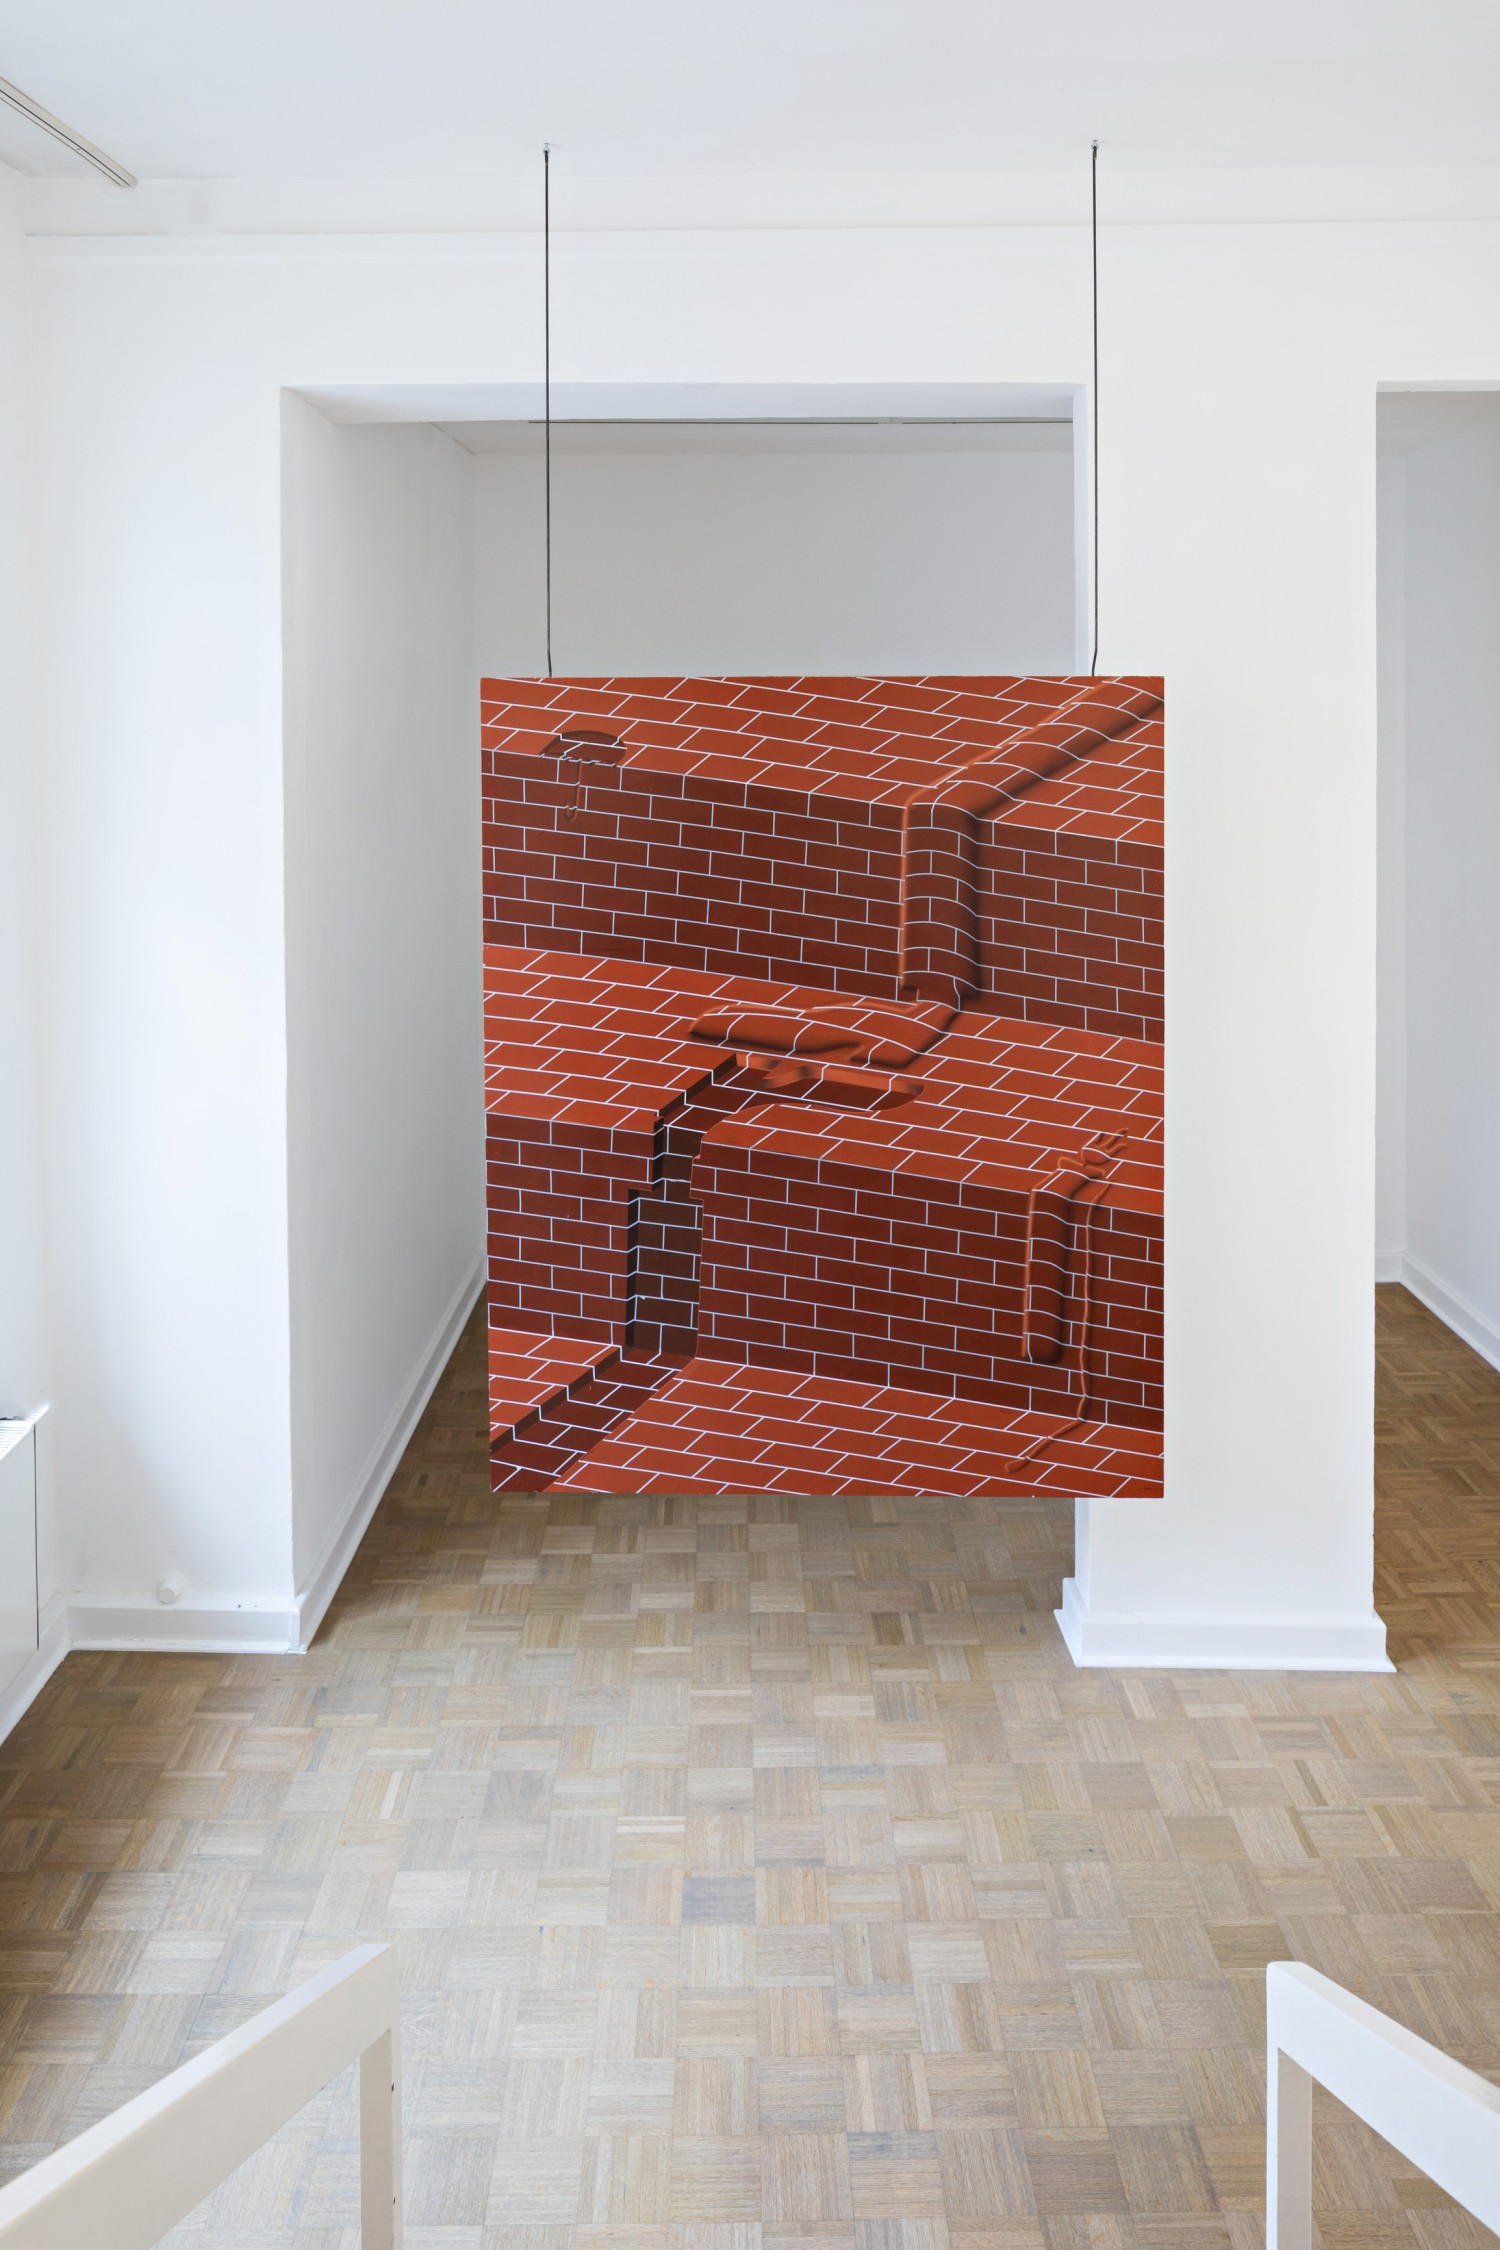 Das hängend installierte Werk zeigt ein Trompe-l’œil, also ein Gemälde welches aufgrund der angewendeten Technik dreidimensional wirkt.